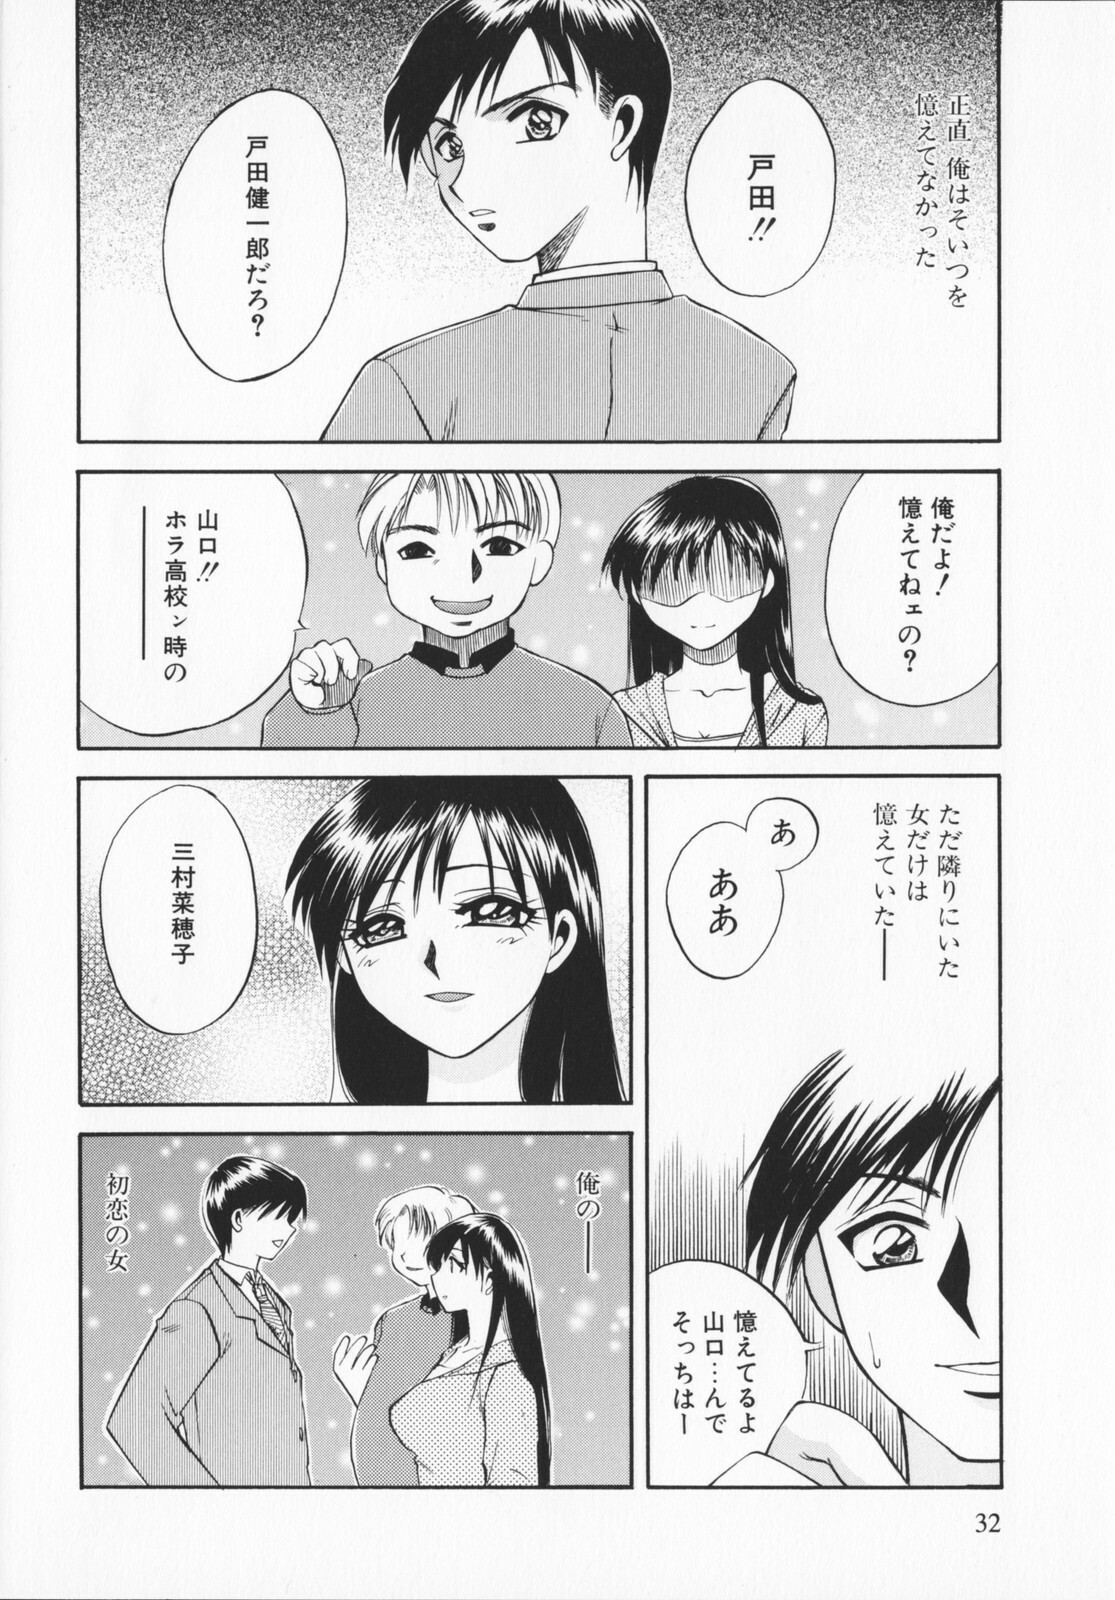 [Ureshino Megumi]Genkaiharetsu (LIMIT EXPLOSION) page 31 full